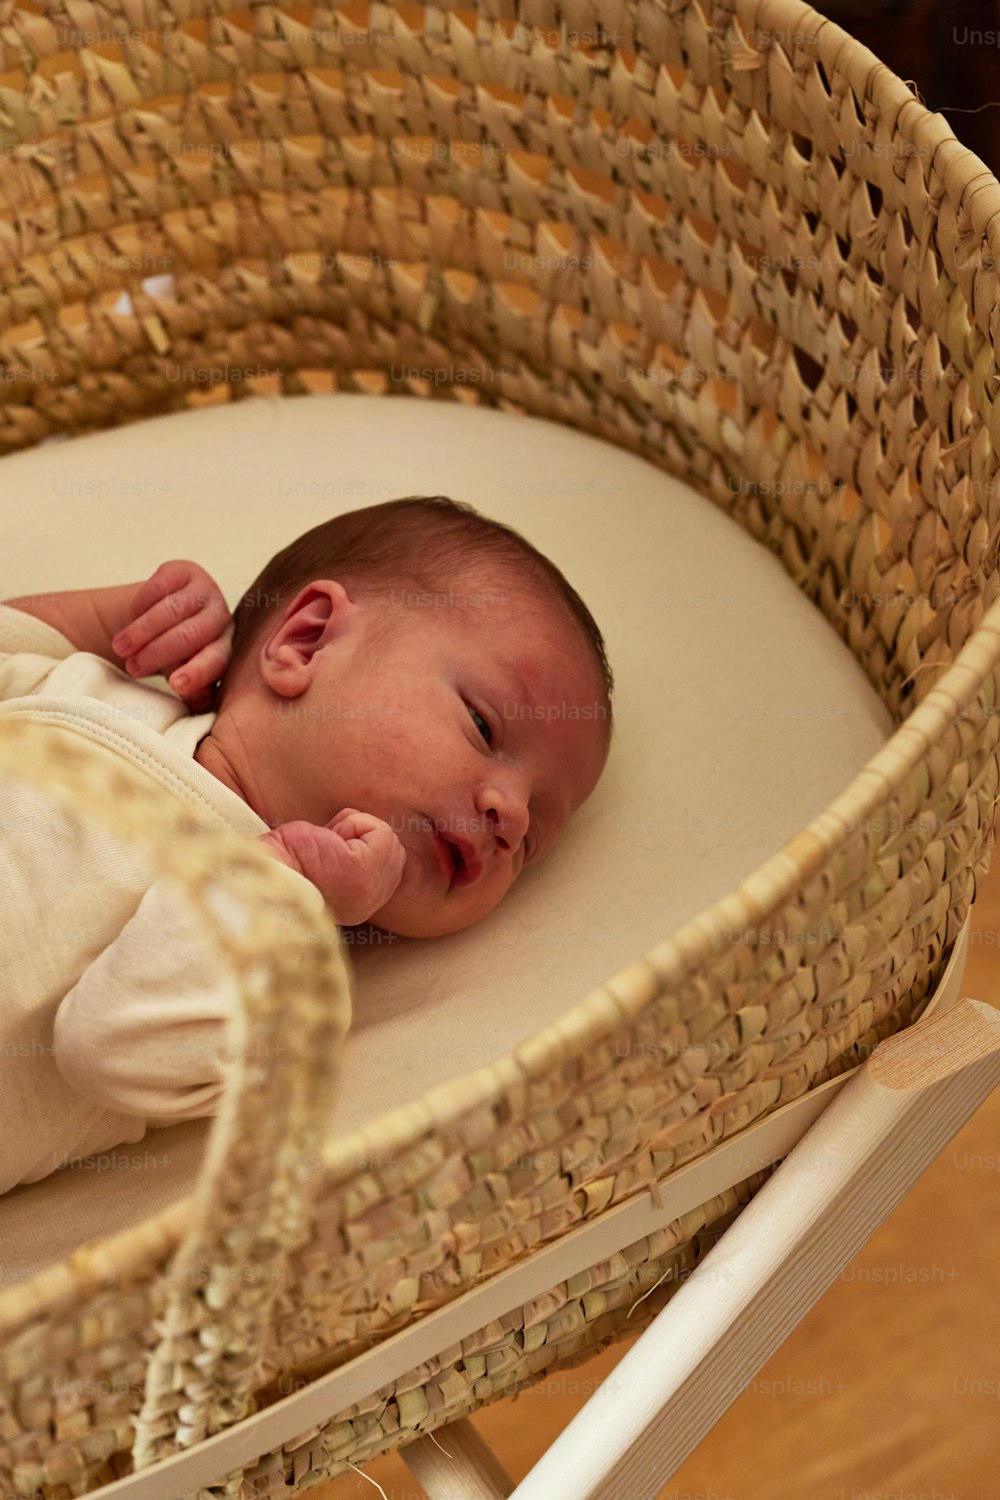 a baby is sleeping in a wicker basket